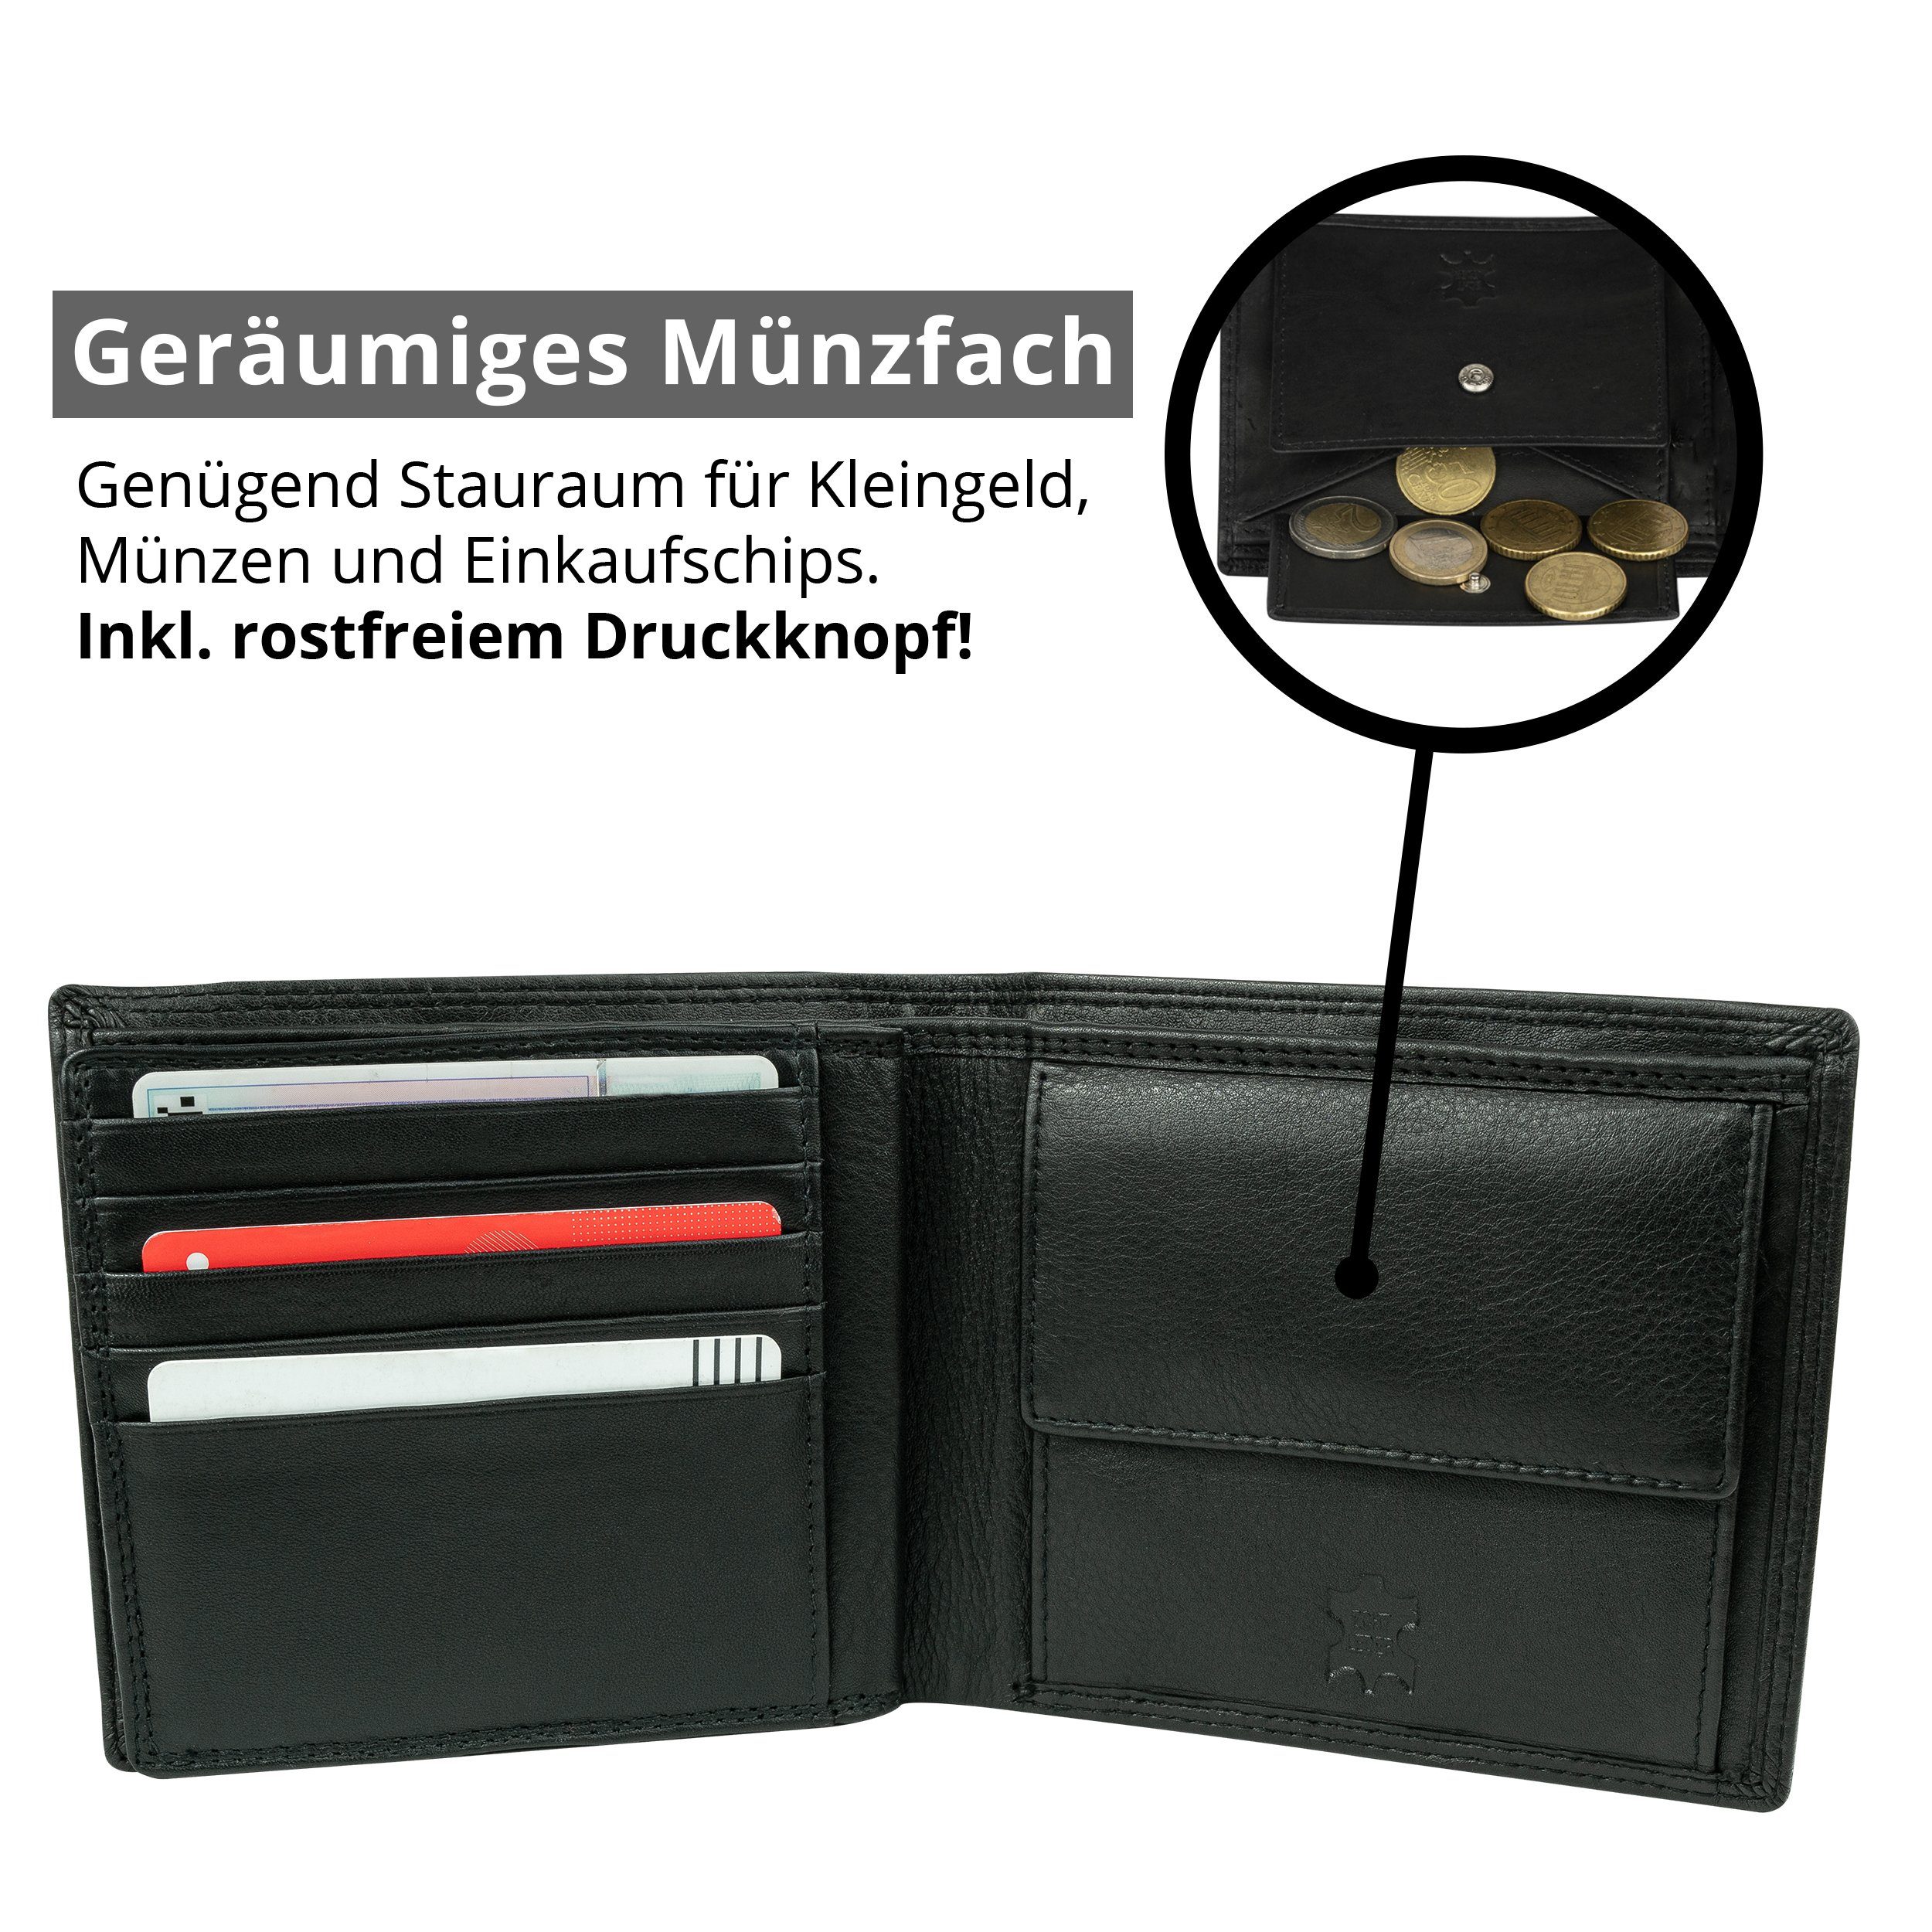 (querformat), 100% Echt-Leder, Geldbörse Geschenkbox RFID-/NFC-Schutz, Premium GN100 Portemonnaie Nappa MOKIES Nappa-Leder, Herren